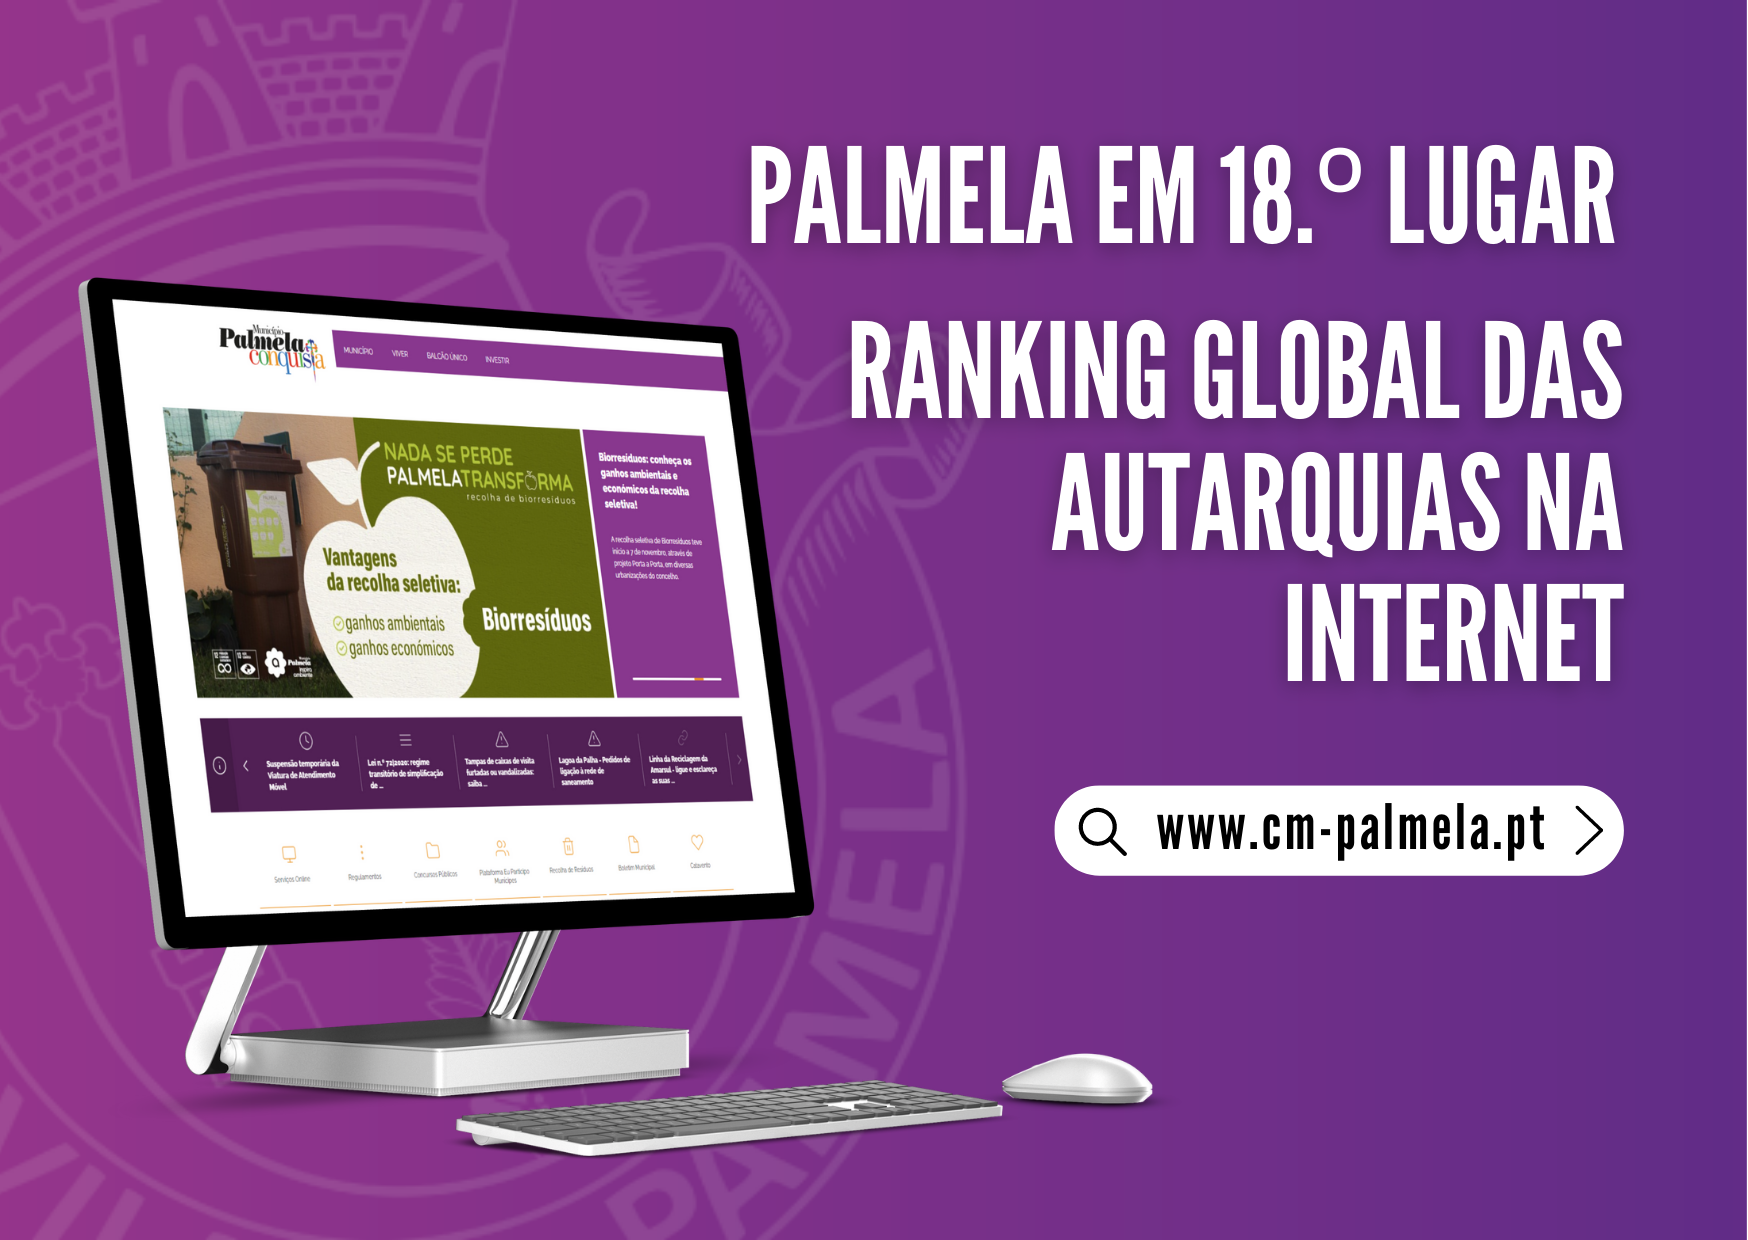 18º lugar no ranking global Palmela em destaque no índice de presença das autarquias na Internet